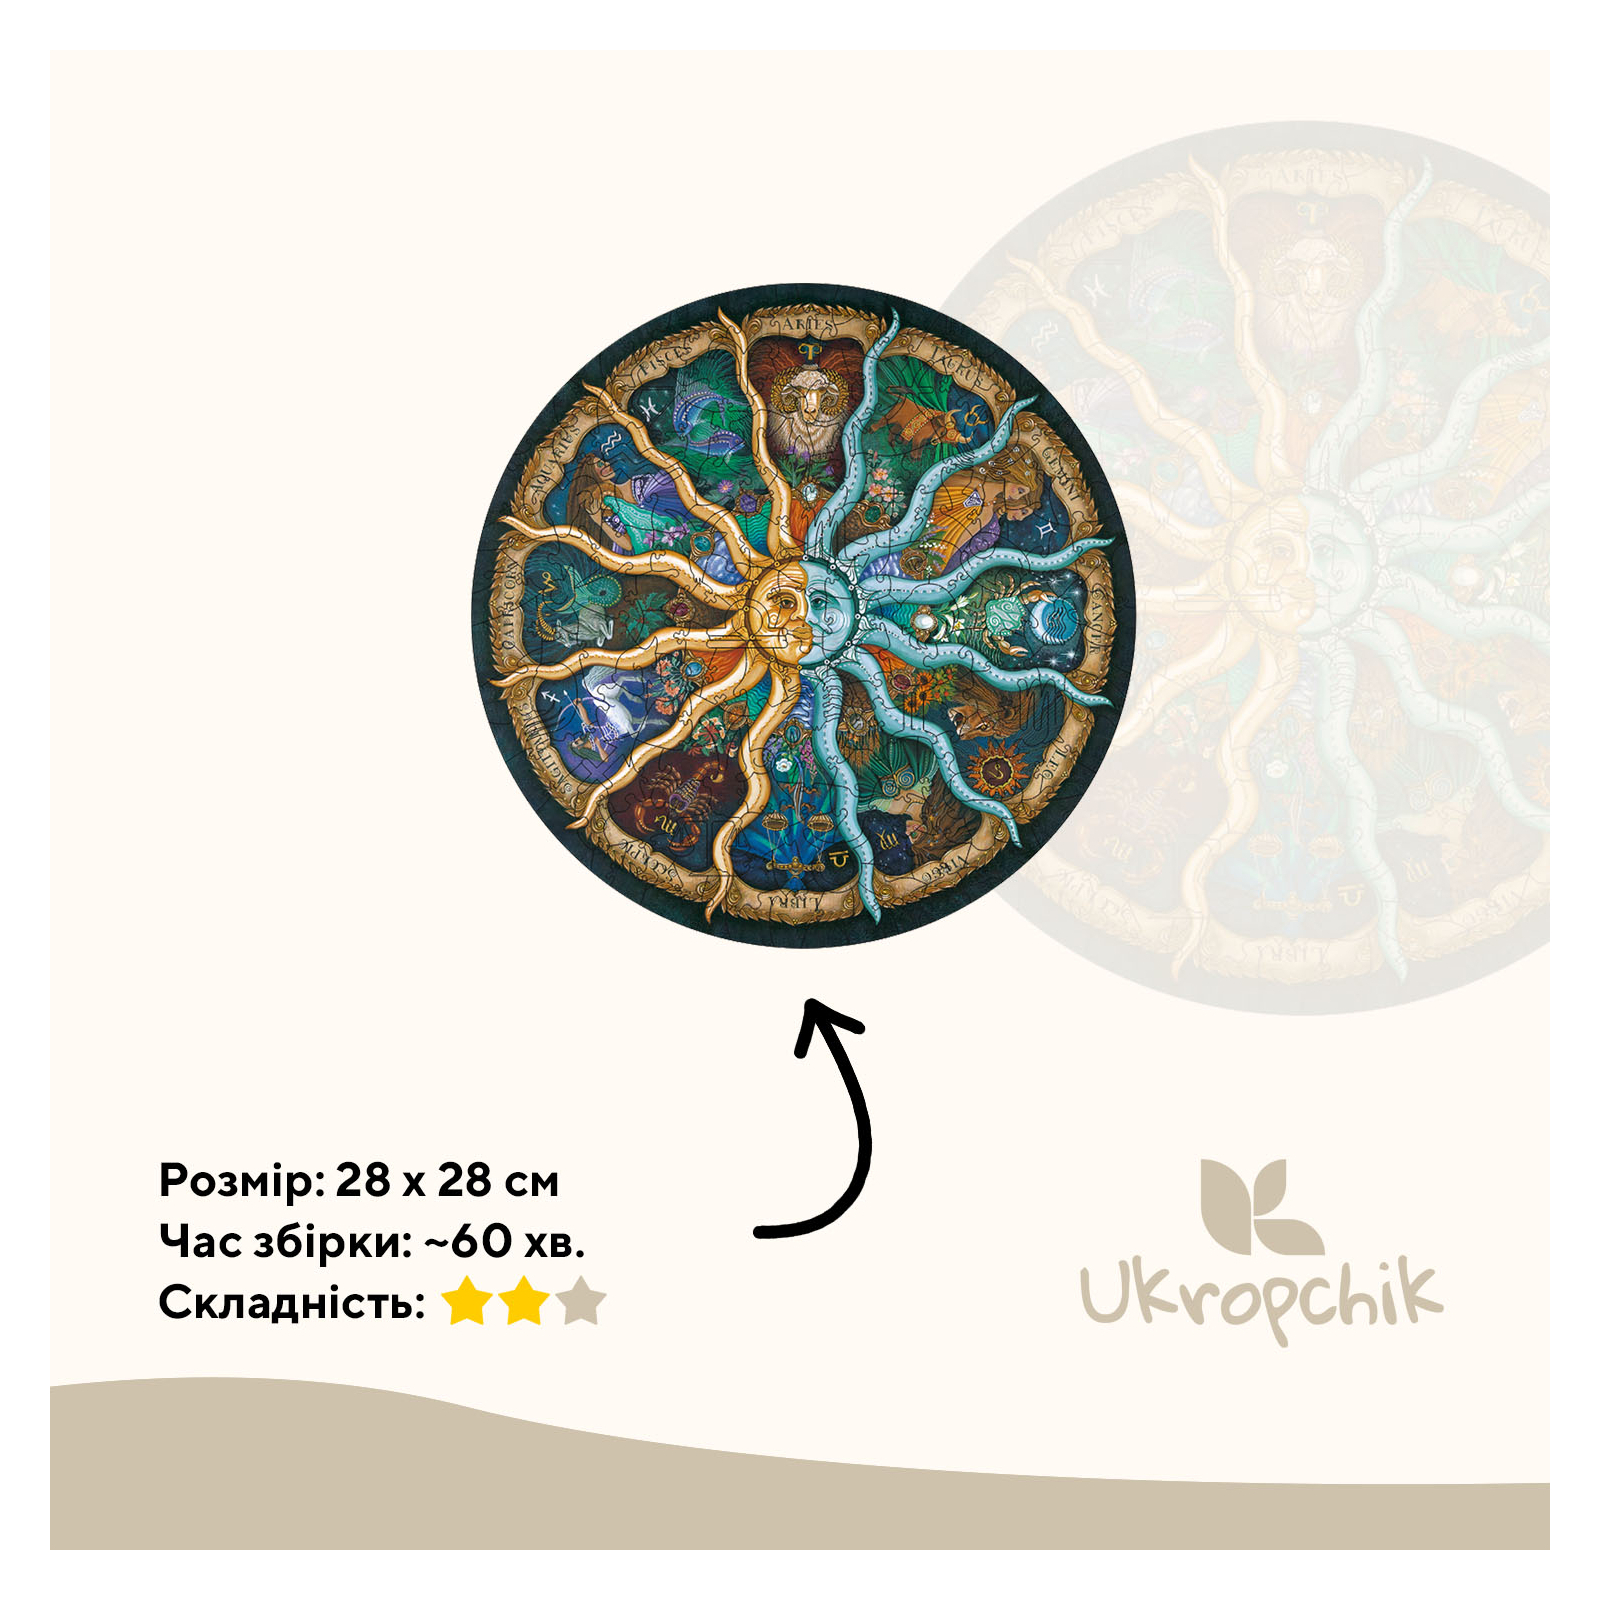 Пазл Ukropchik деревянный Таинственный Зодиак size - L в коробке с набором-рамкой (Mysterious Zodiac A3) изображение 2